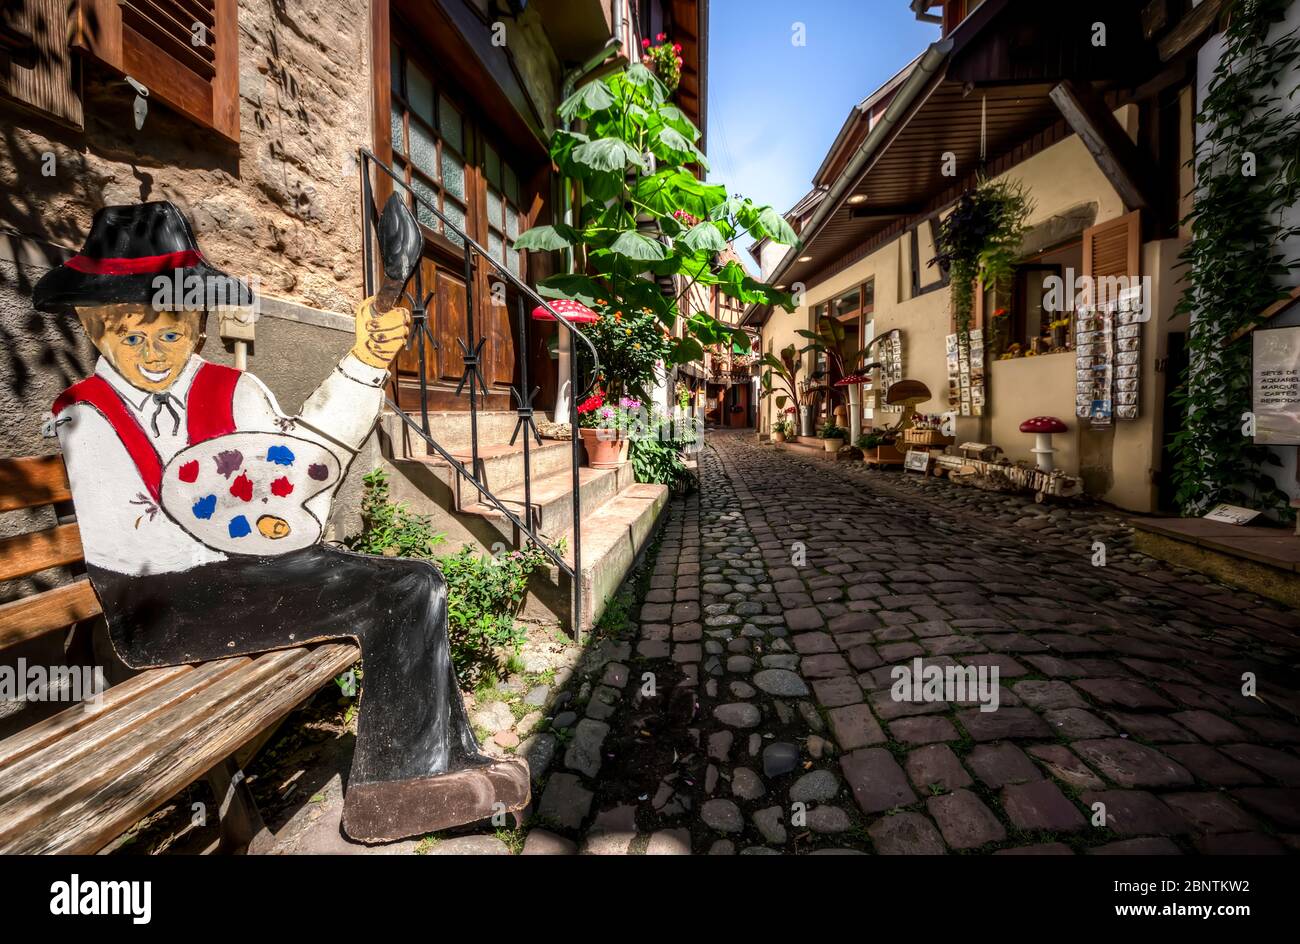 Rue pavée touristique de la vieille ville d'Eguisheim avec des boutiques et un mannequin en bois artisanal d'un peintre Banque D'Images